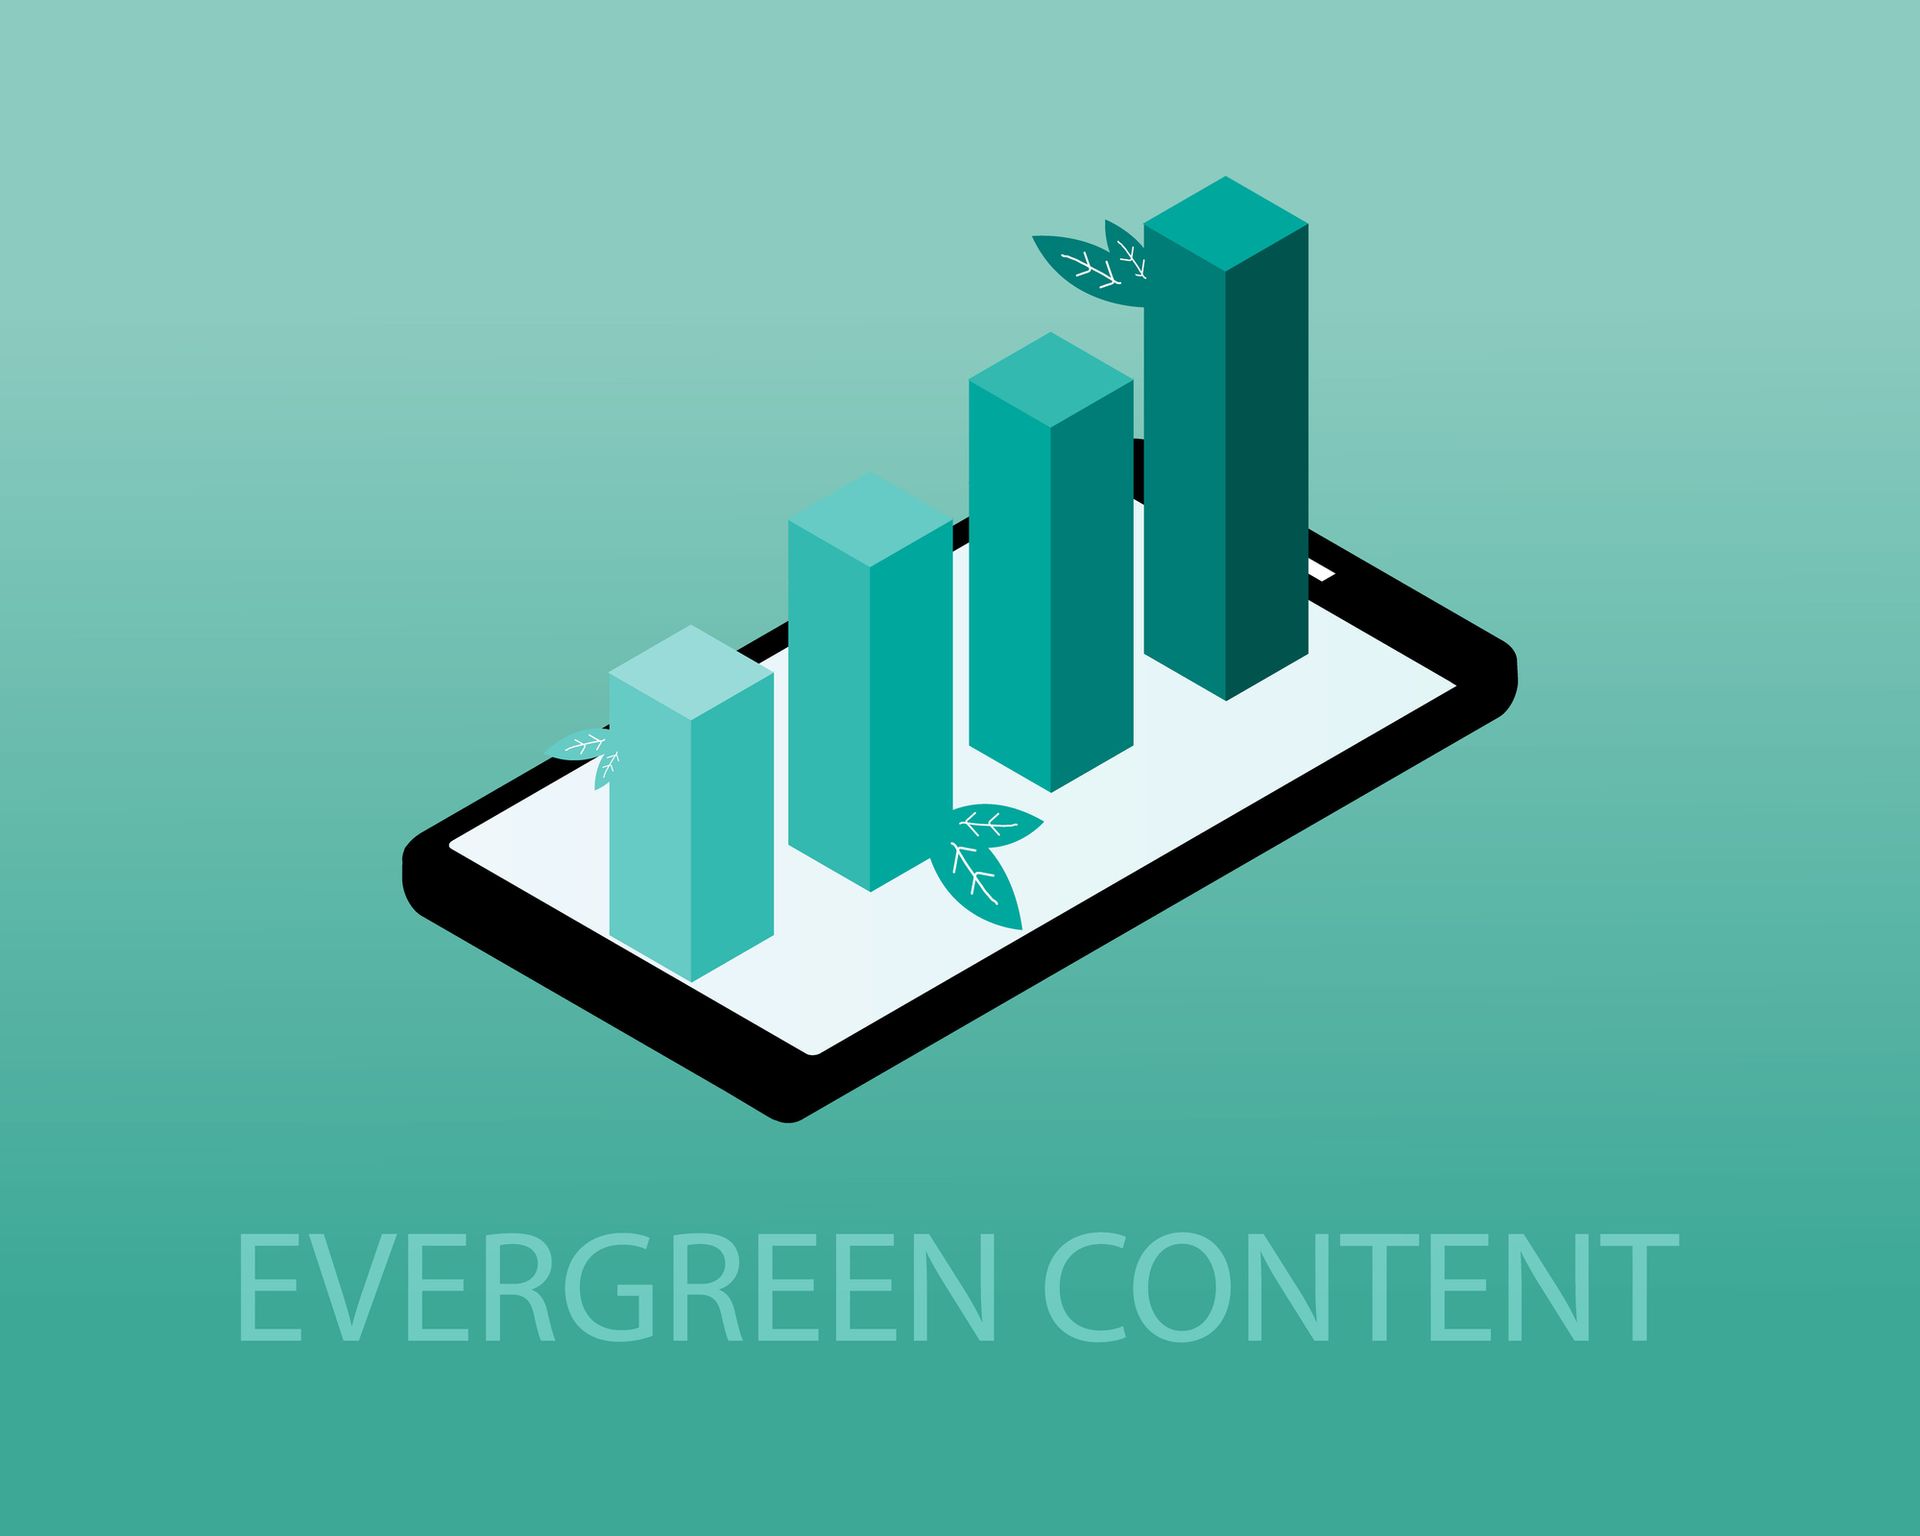 Een groene staafgrafiek op een mobiele telefoon ter illustratie van een post over evergreen content.